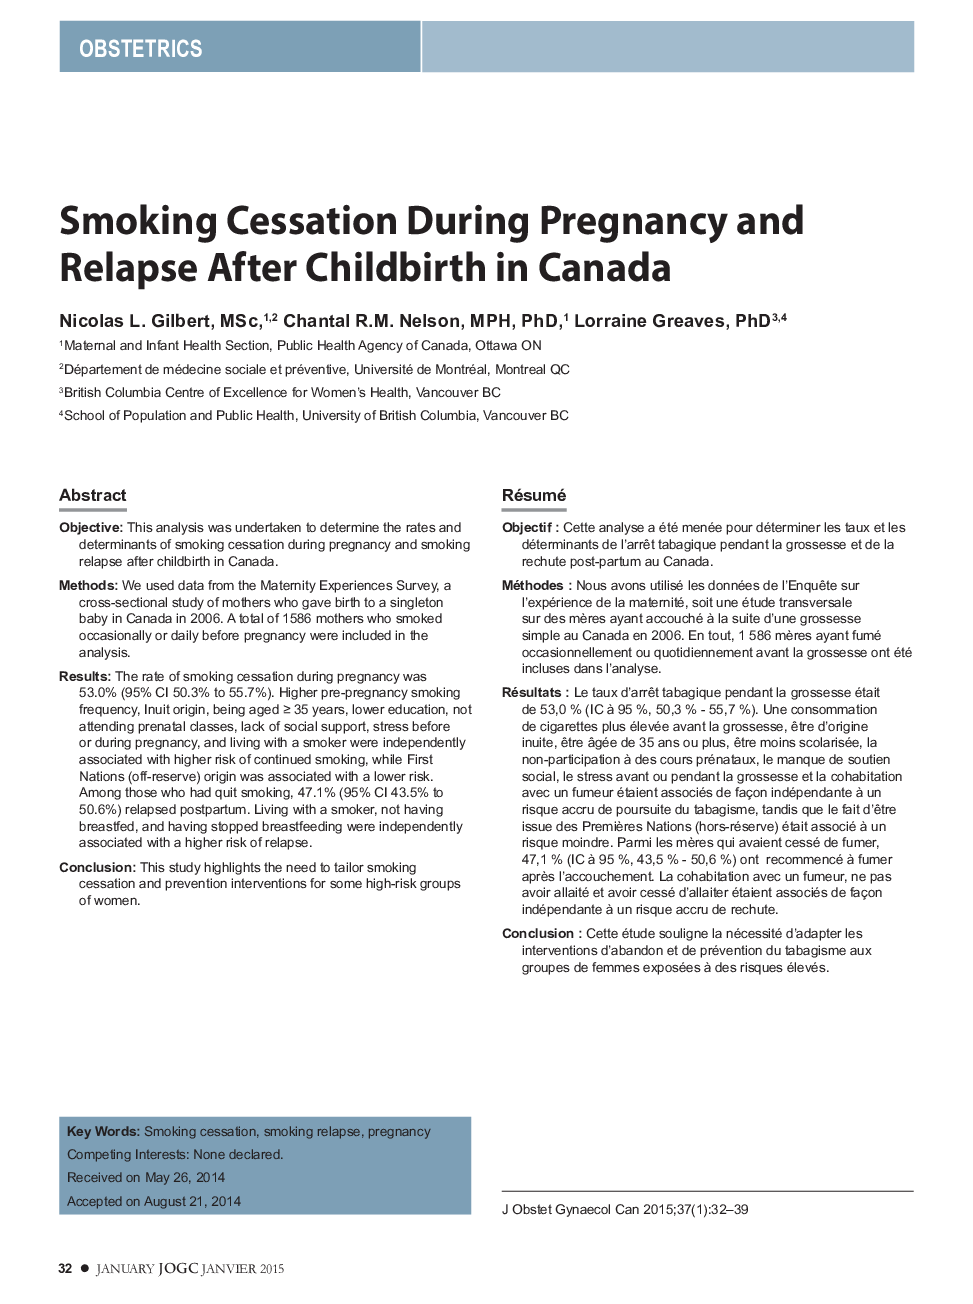 ترک سیگار در طول بارداری و عود پس از زایمان در کانادا 